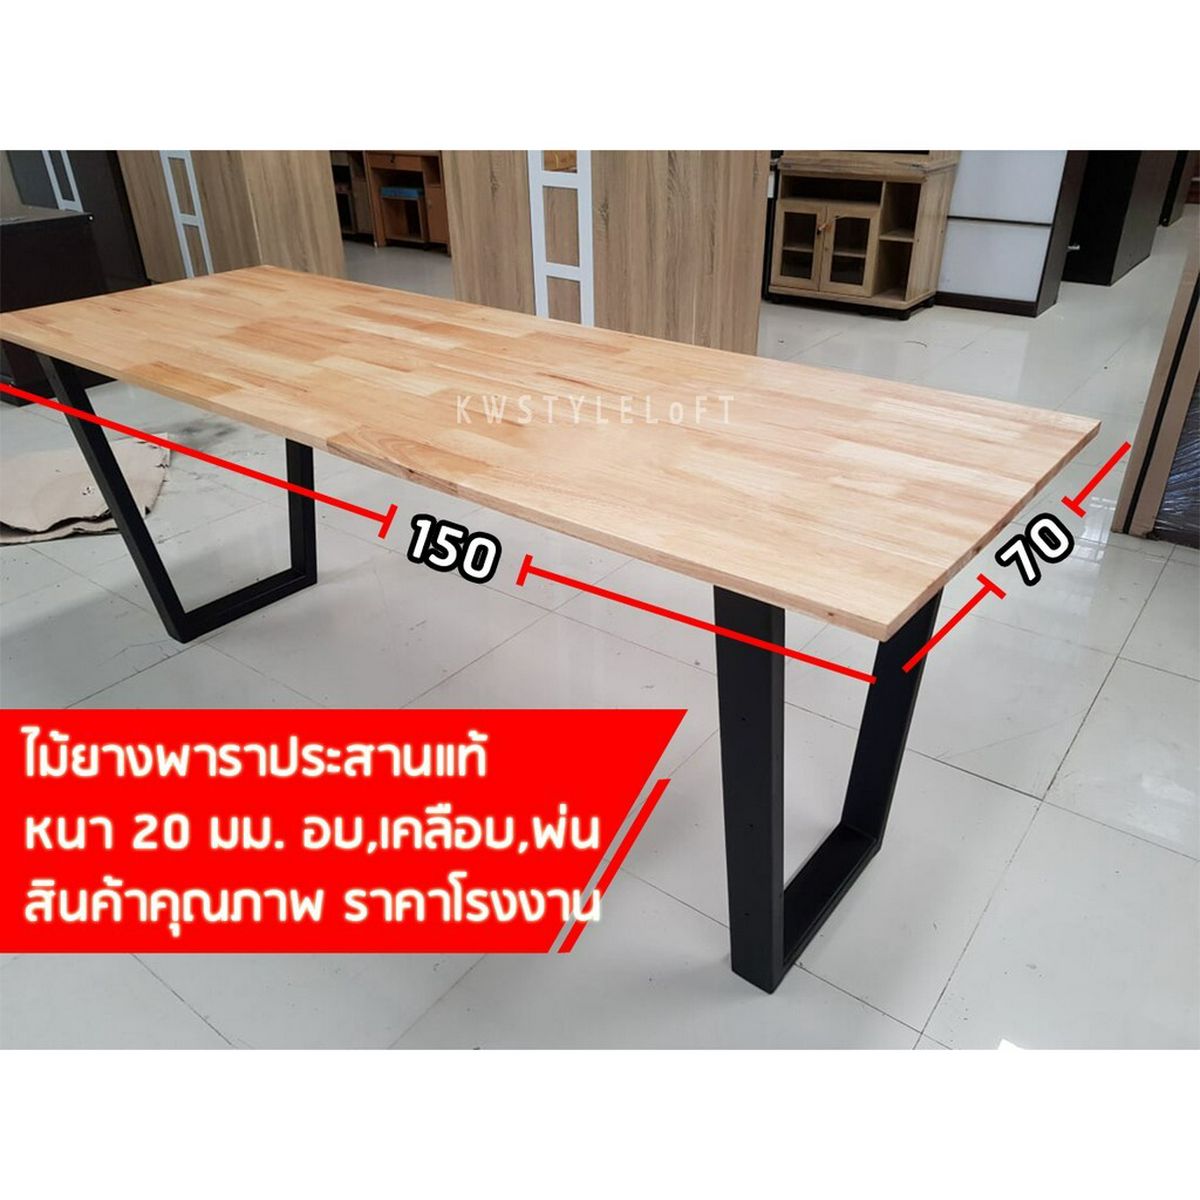 Kwstyleloft โต๊ะทำงานไม้จริงขาเหล็กสไตล์ Loft ขนาด 70x150ซม. โต๊ะไม้ยางแท้  เคลือบผิวอย่างดีแข็งแรงทนทานมาก ขาZX สีดำ